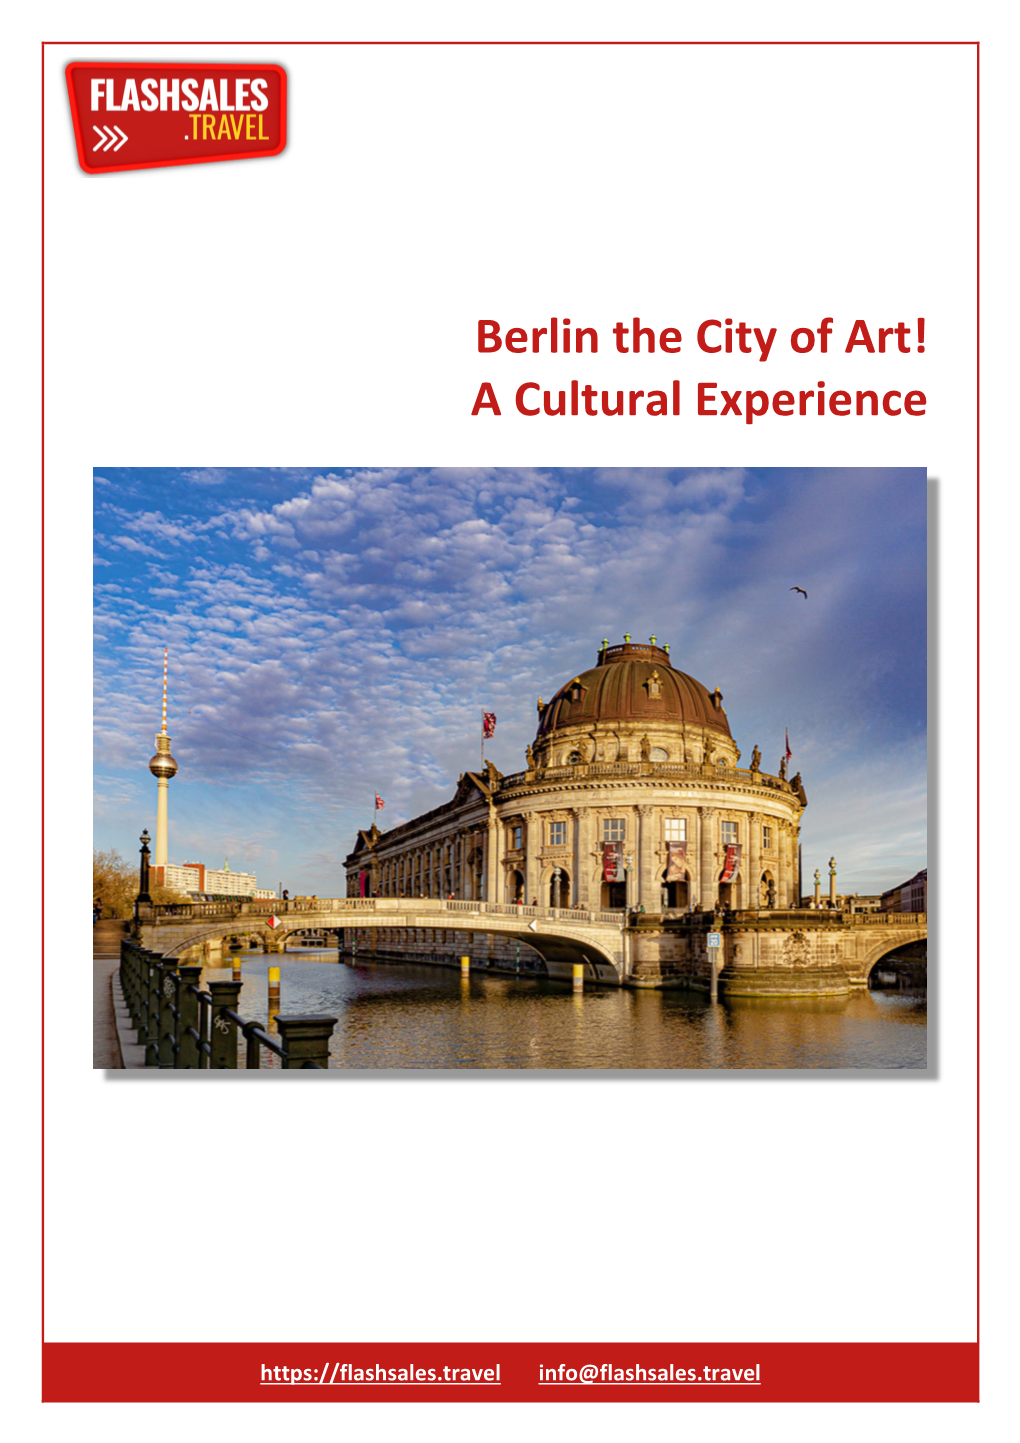 Berlin the City of Art! a Cultural Experience Hotel Name First Class Maritim Hotel Proarte